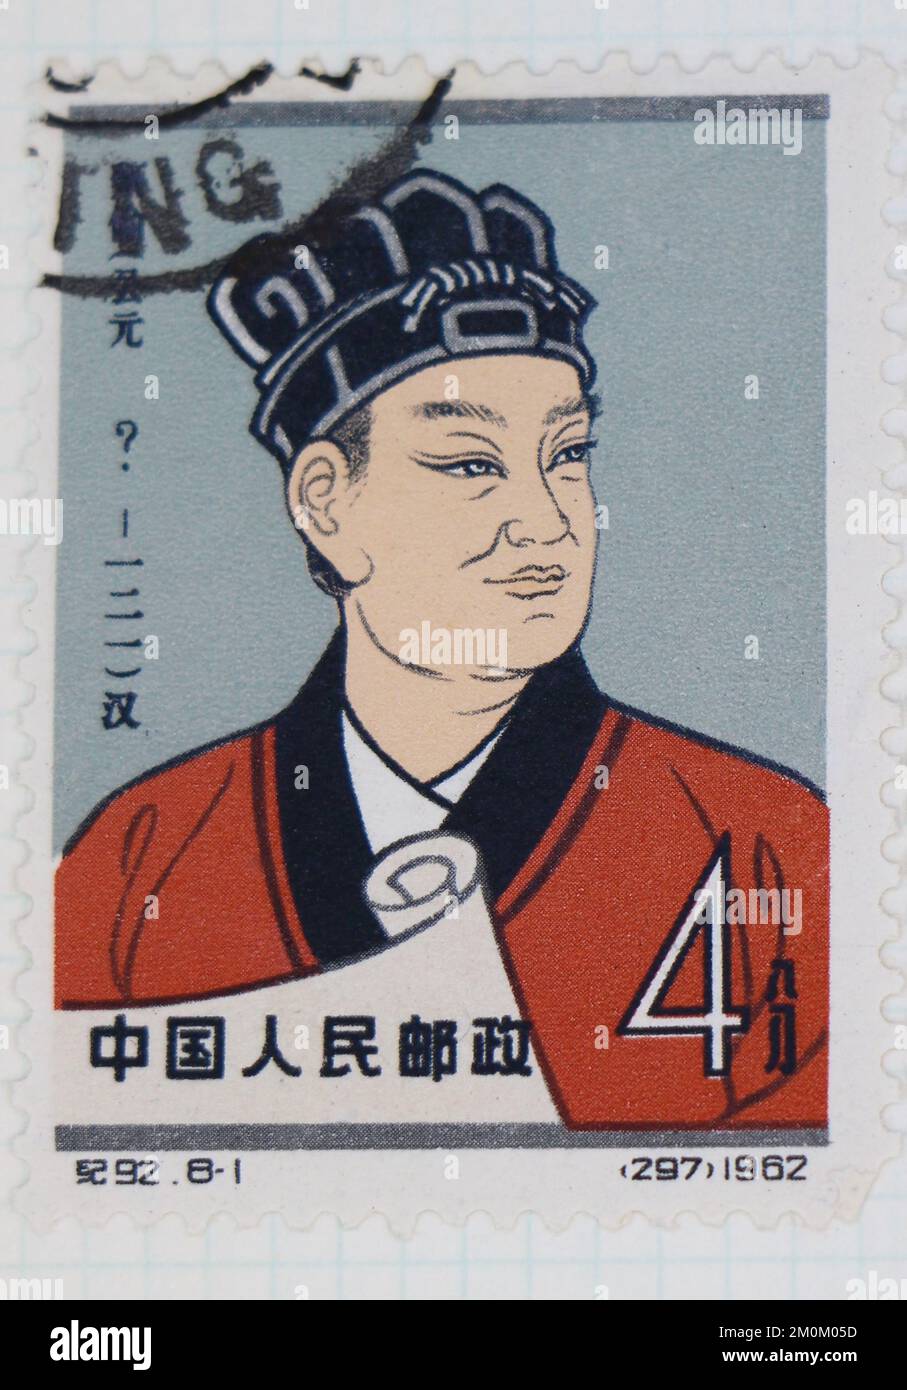 Photo d'un timbre-poste de la Chine Tsai LUN inventeur du papier des scientifiques de la Chine antique série 1962 Banque D'Images